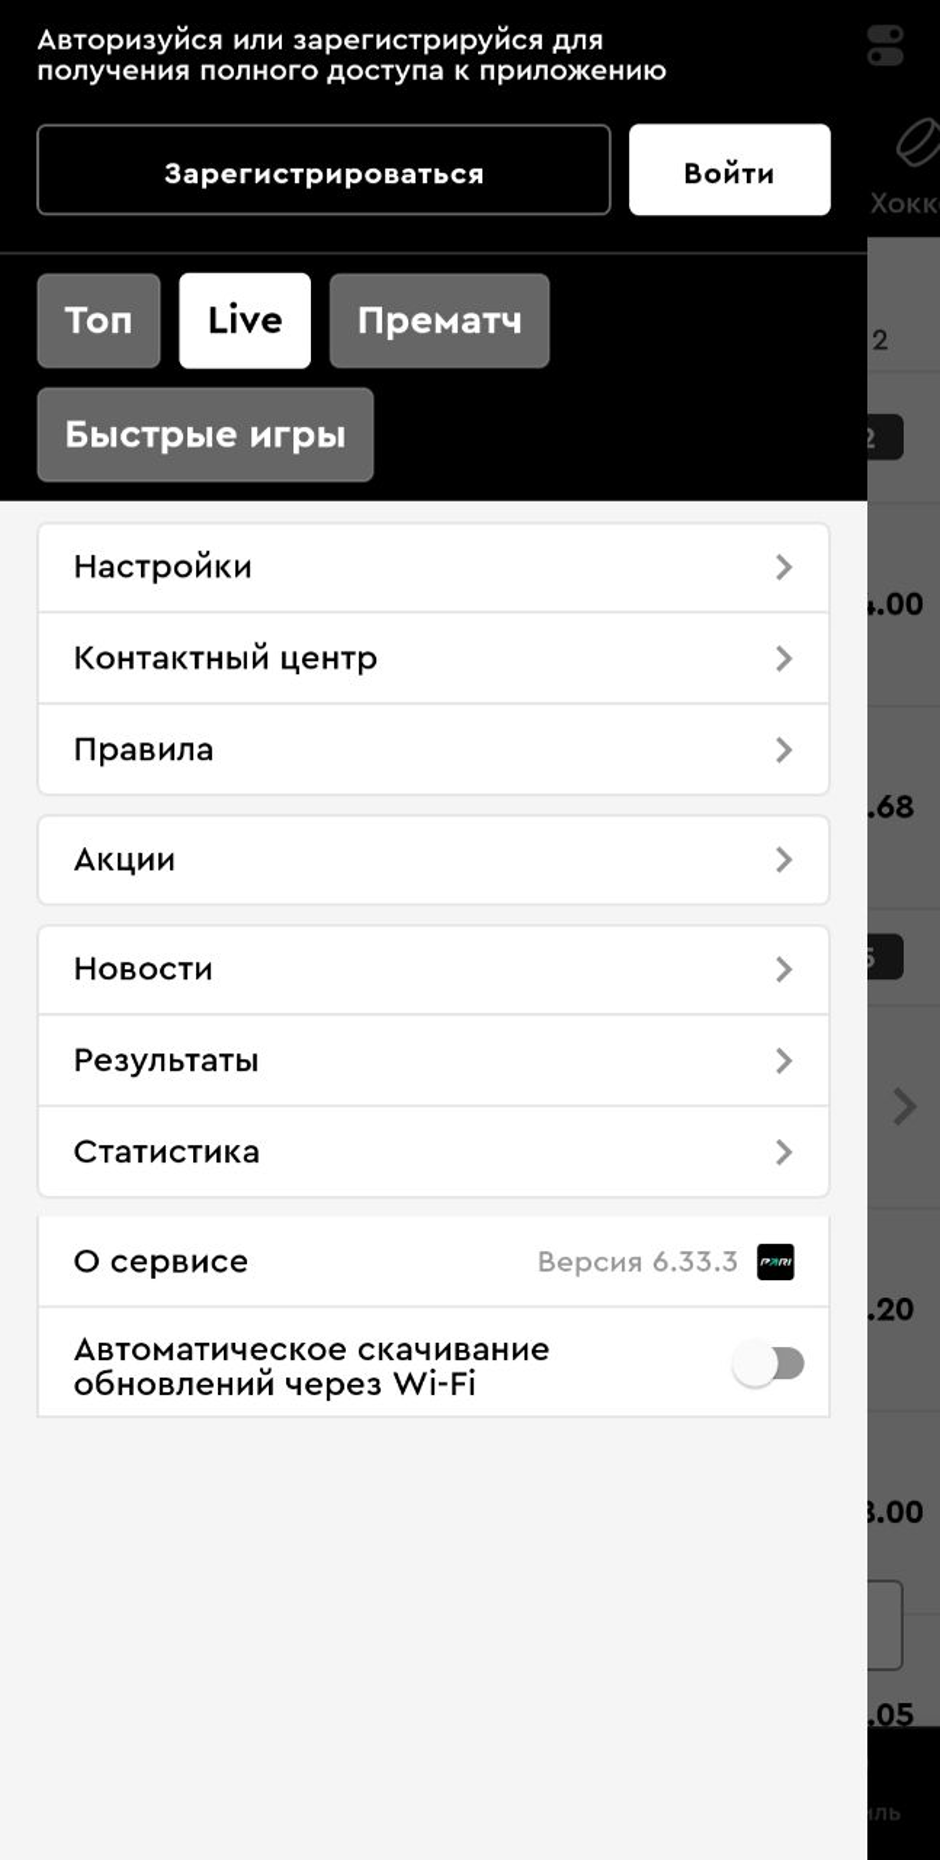 Мобильное приложение БК Pari скачать для Android и IOS фото